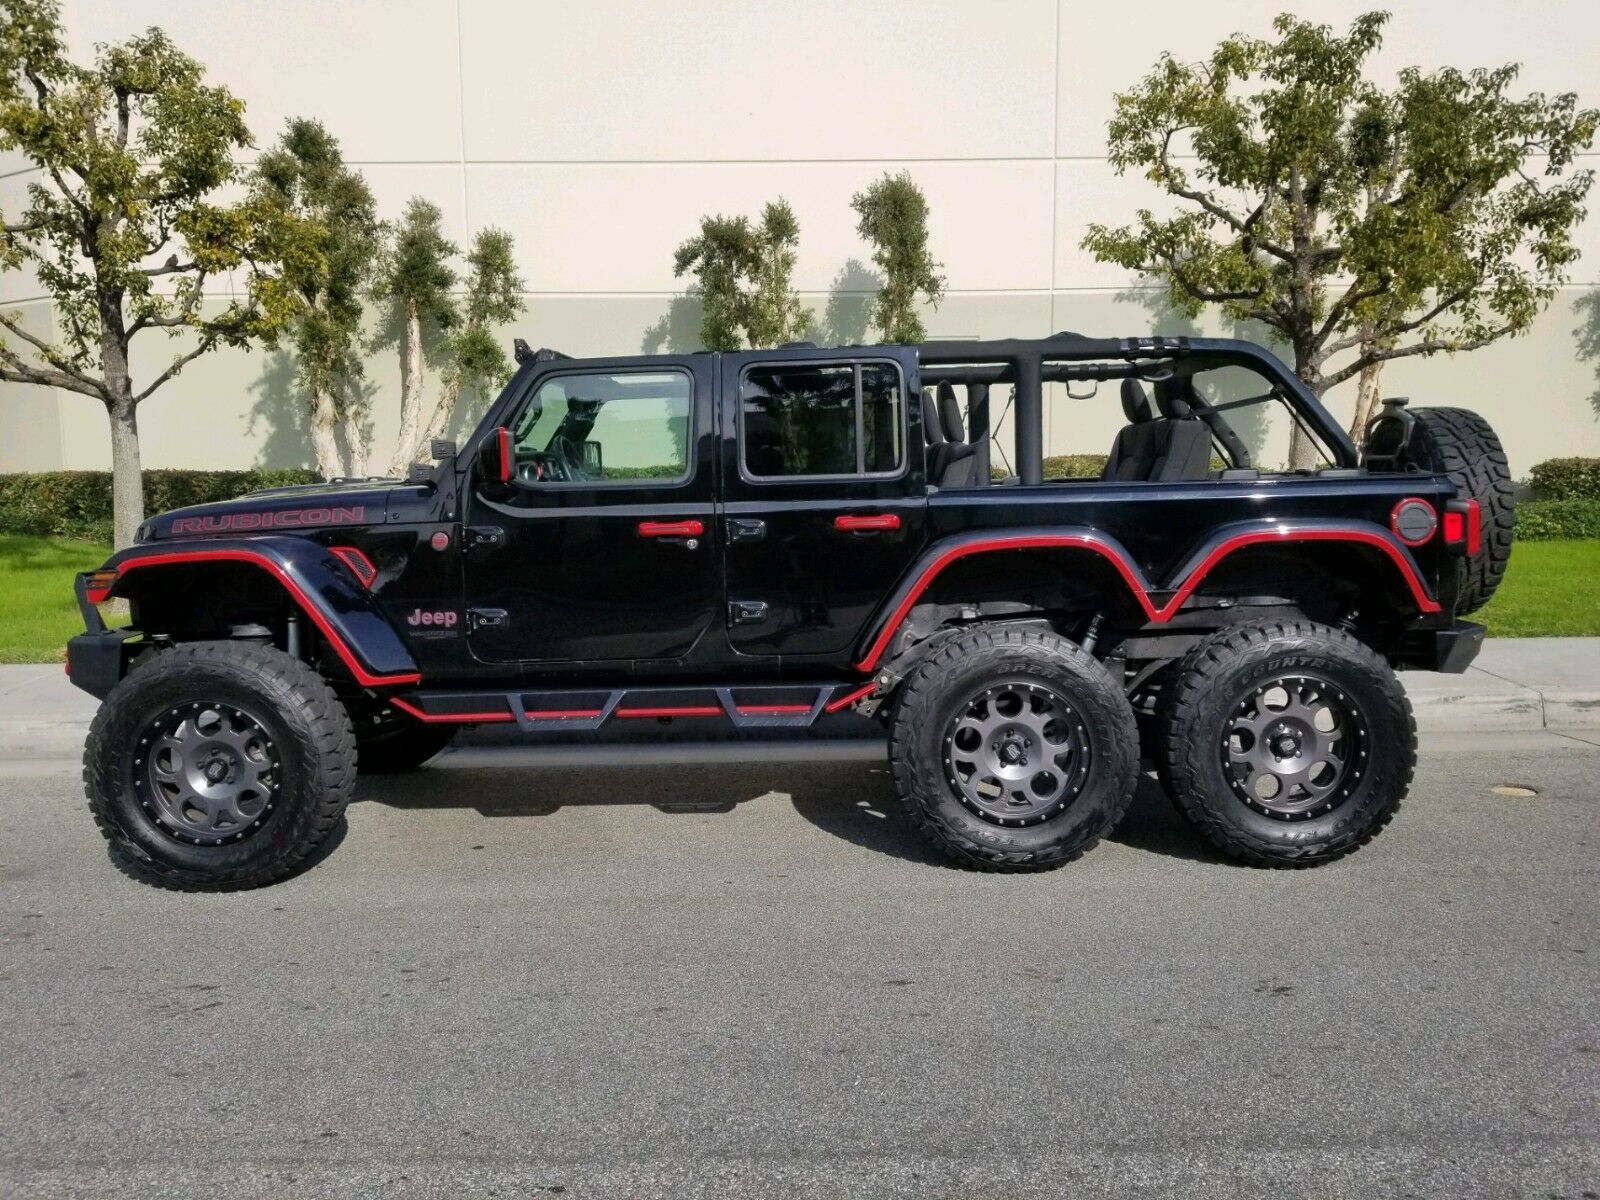 2018 Jeep Wrangler JL Rubicon Unlimited na prodej